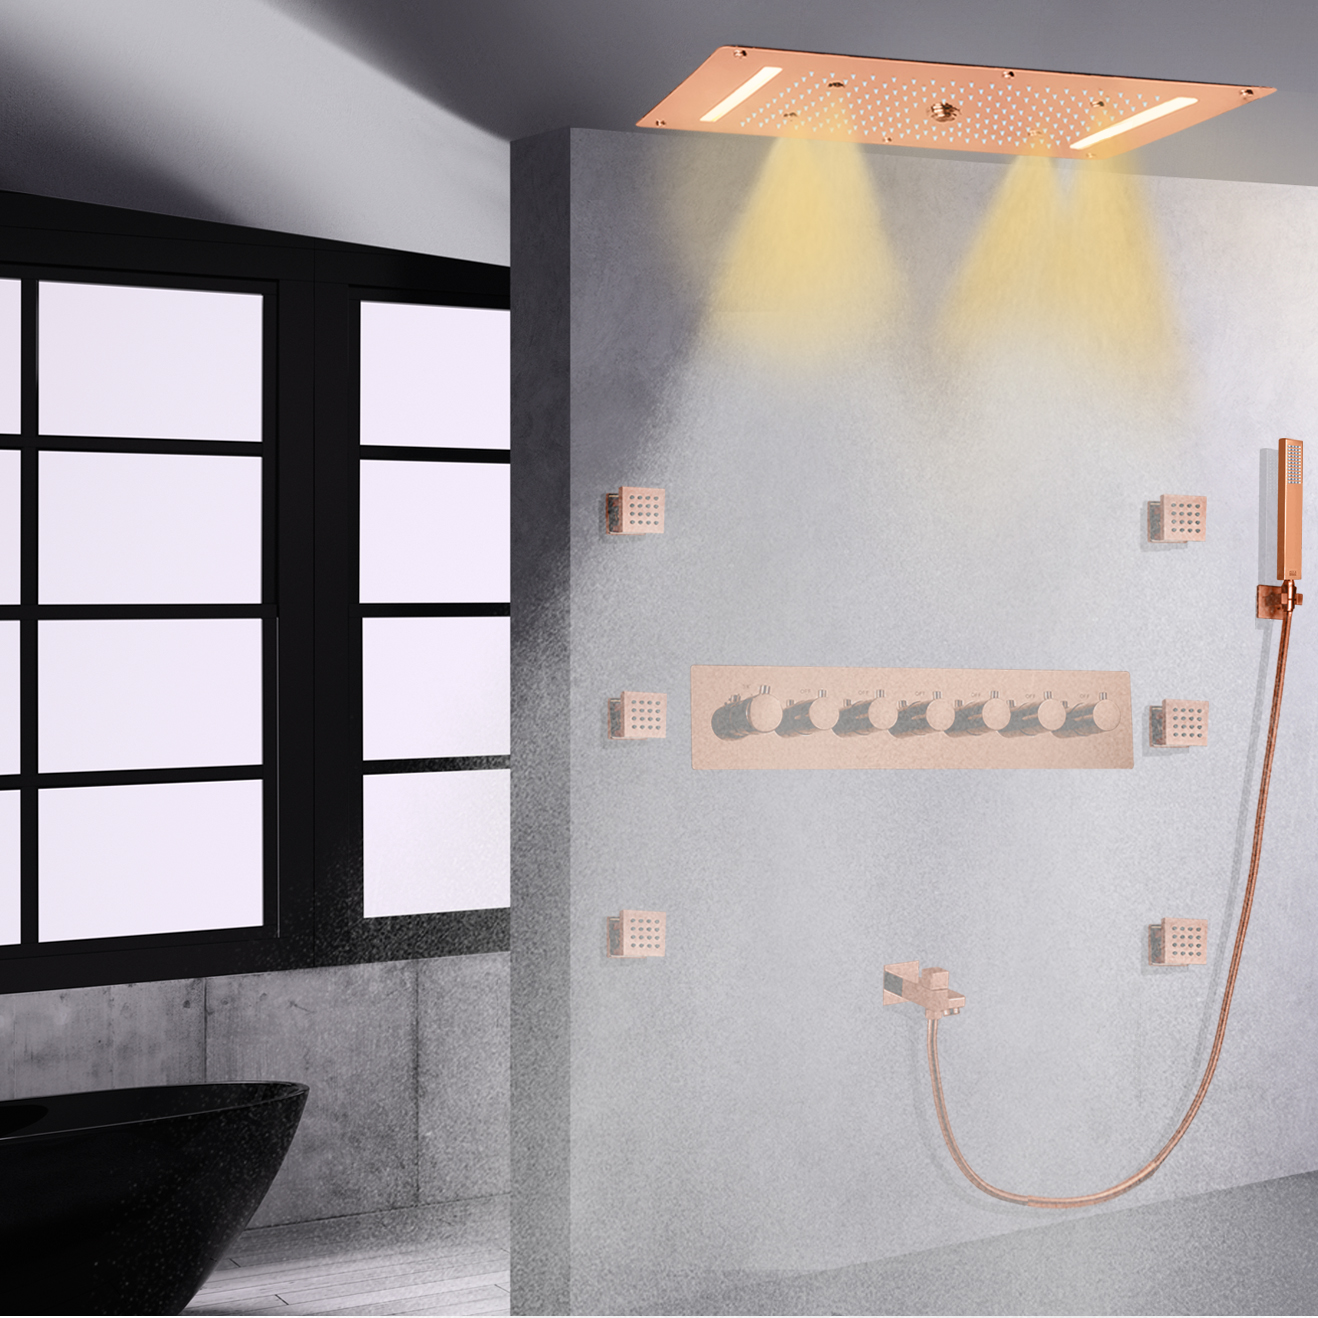 مجموعة دش مخفية مثبتة على الحائط LED باللون الذهبي الوردي في الحمام شلال ترموستاتي سبا